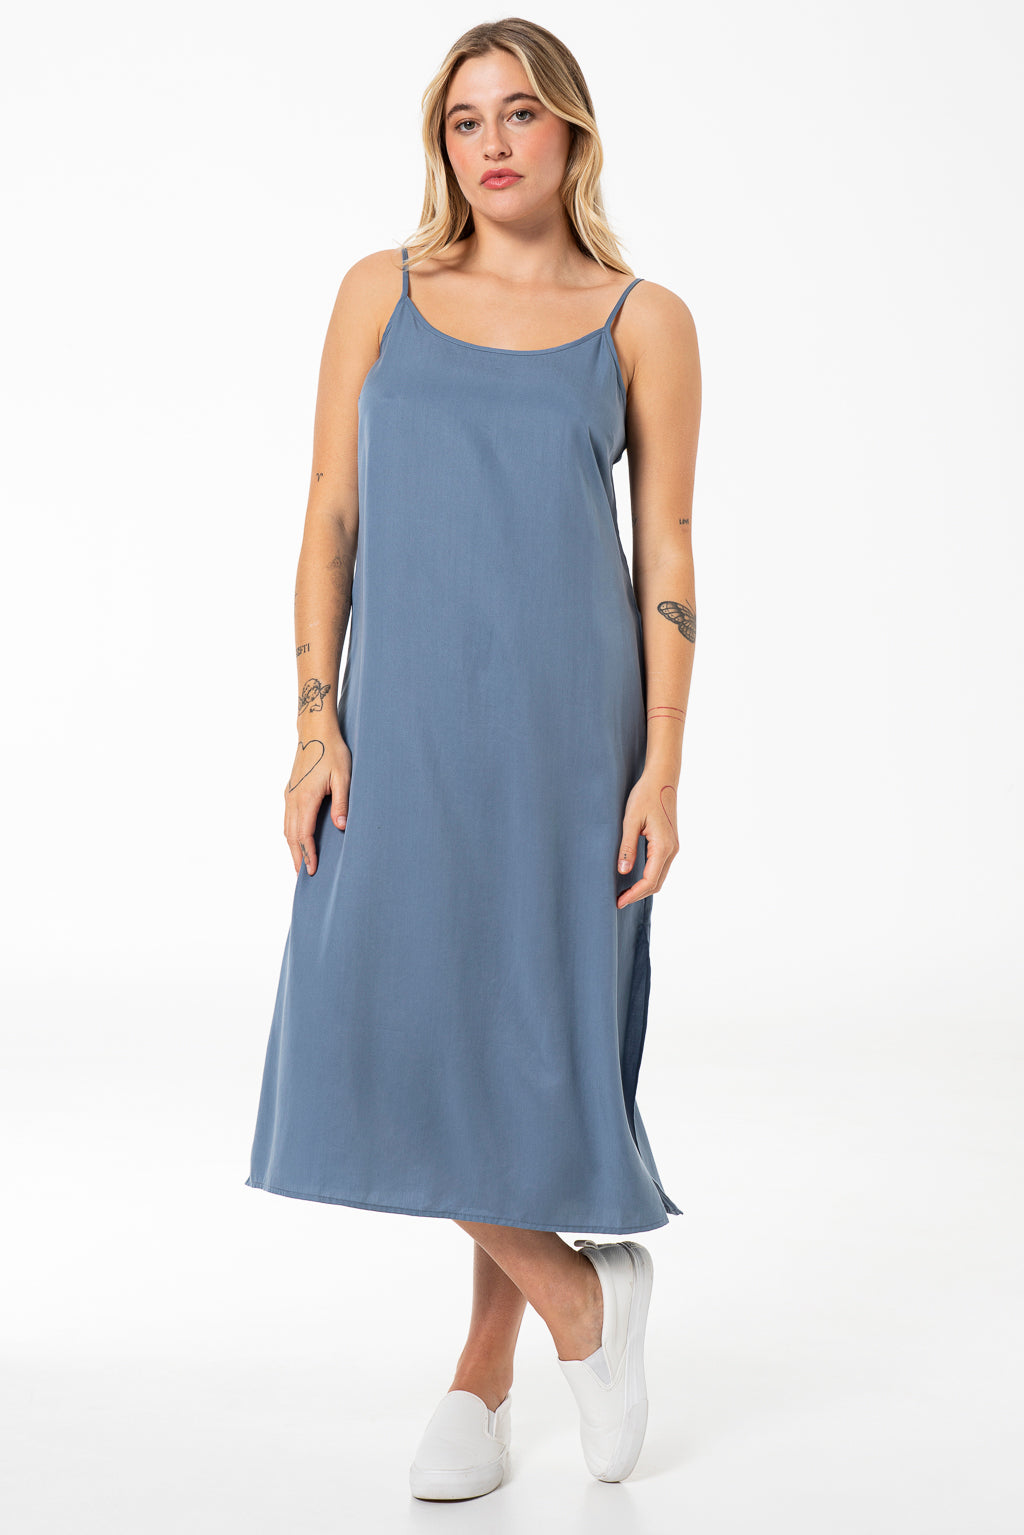 Chambray Slip Dress _ 141443 _ Light Blue